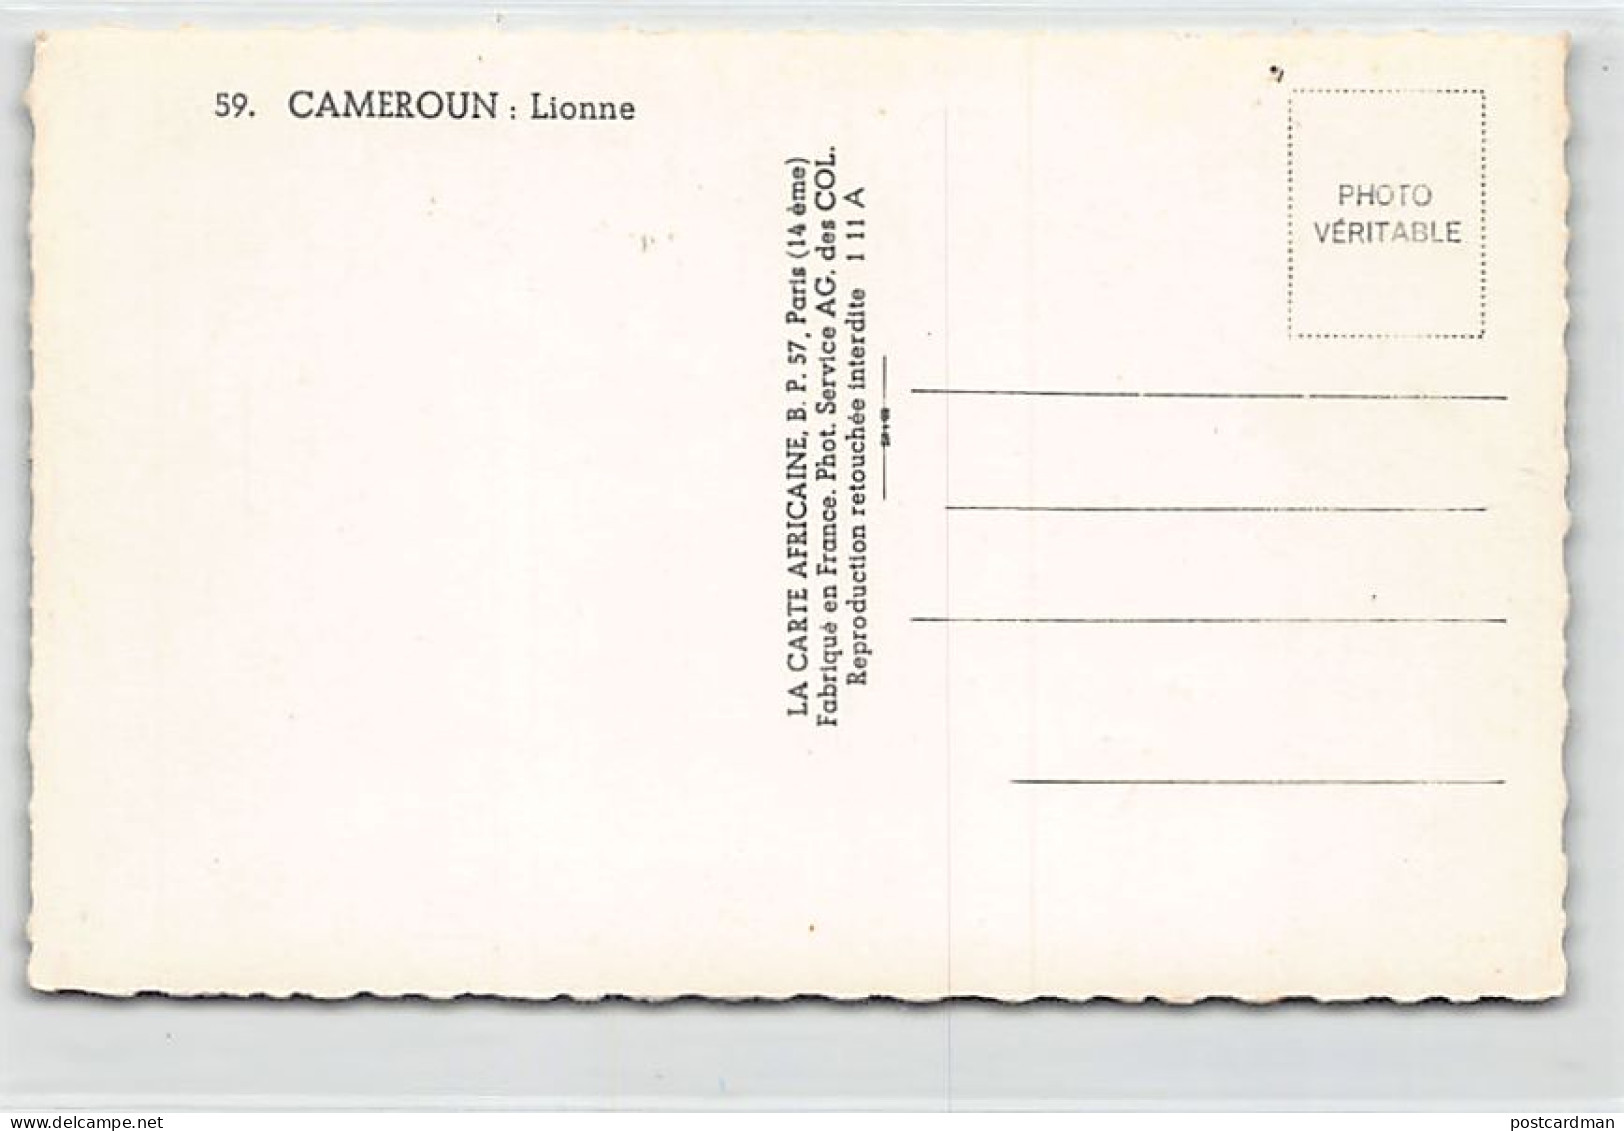 Cameroun - Lionne - Ed. La Carte Africaine 59 - Kameroen